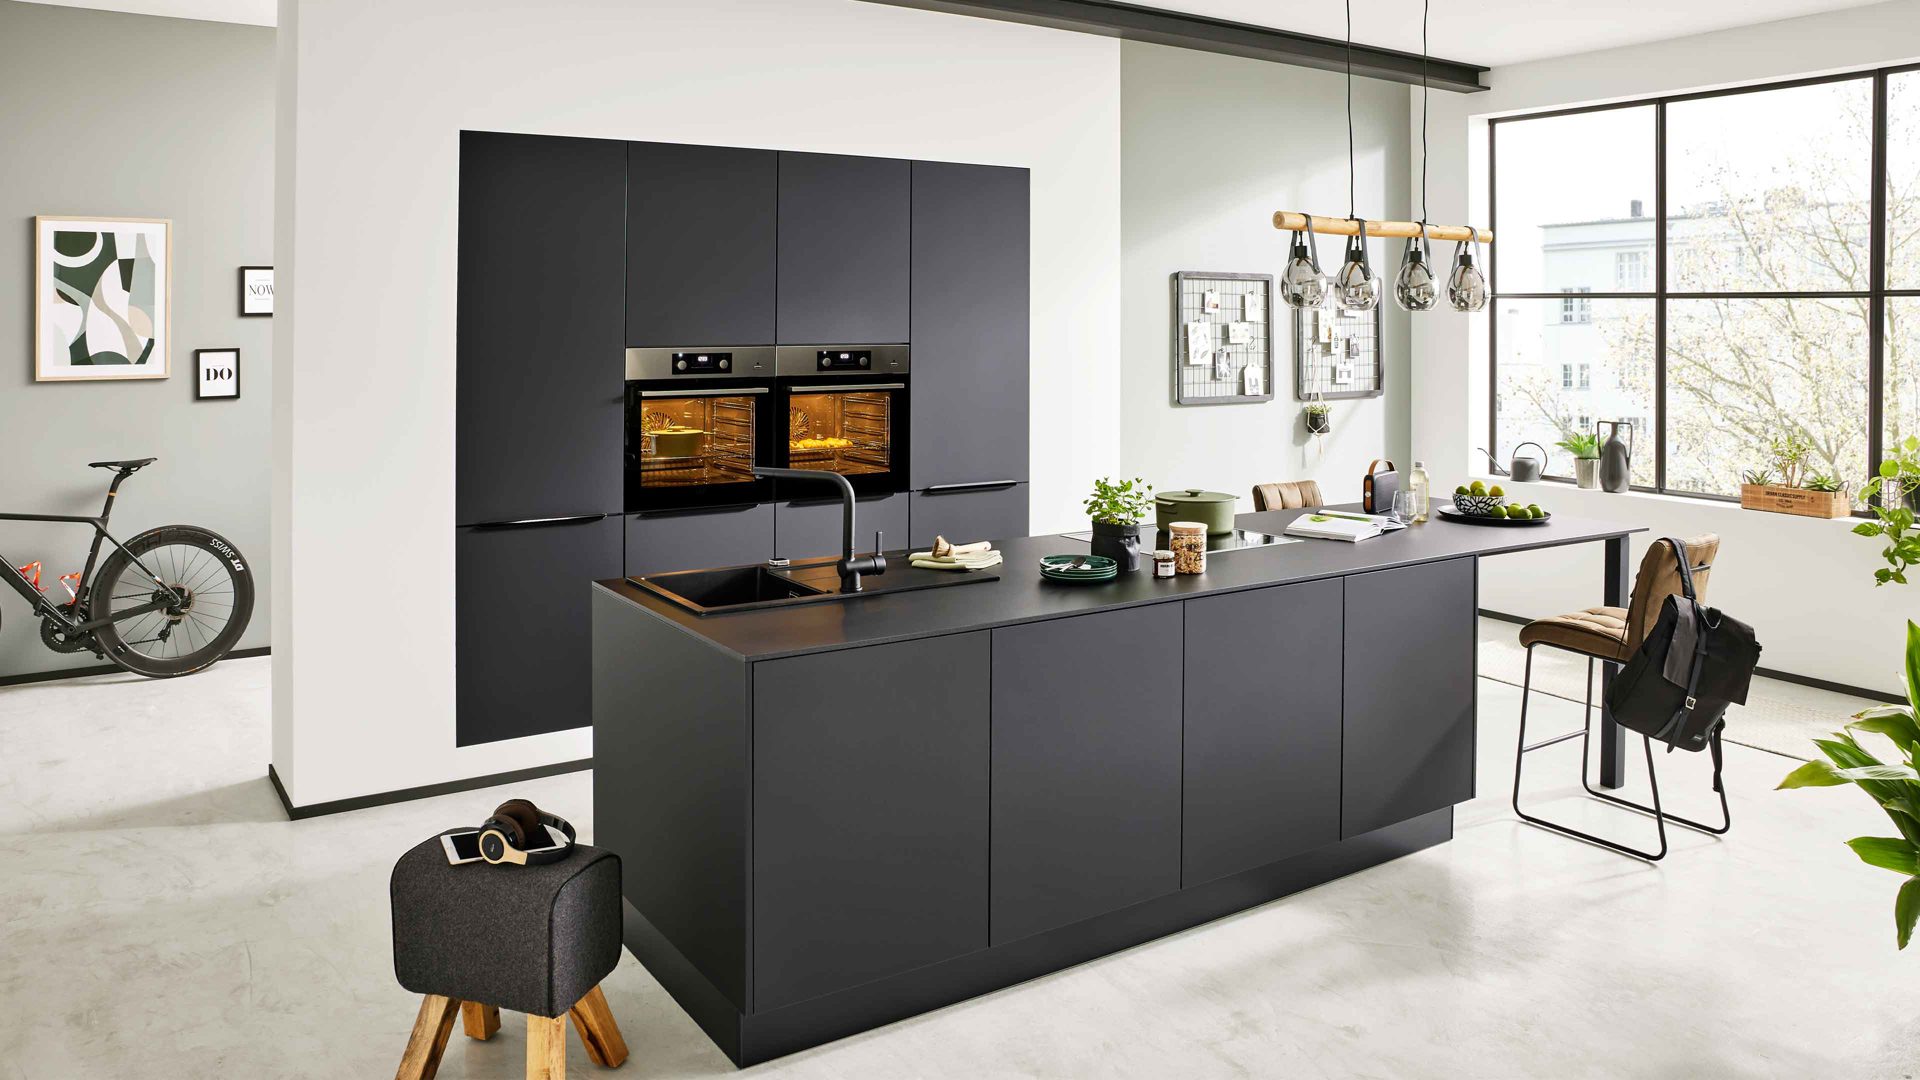 Einbauküche Interliving aus Holz in Schwarz Interliving Küche Serie 3057 mit AEG Einbaugeräten Mattschwarz – zweizeilig